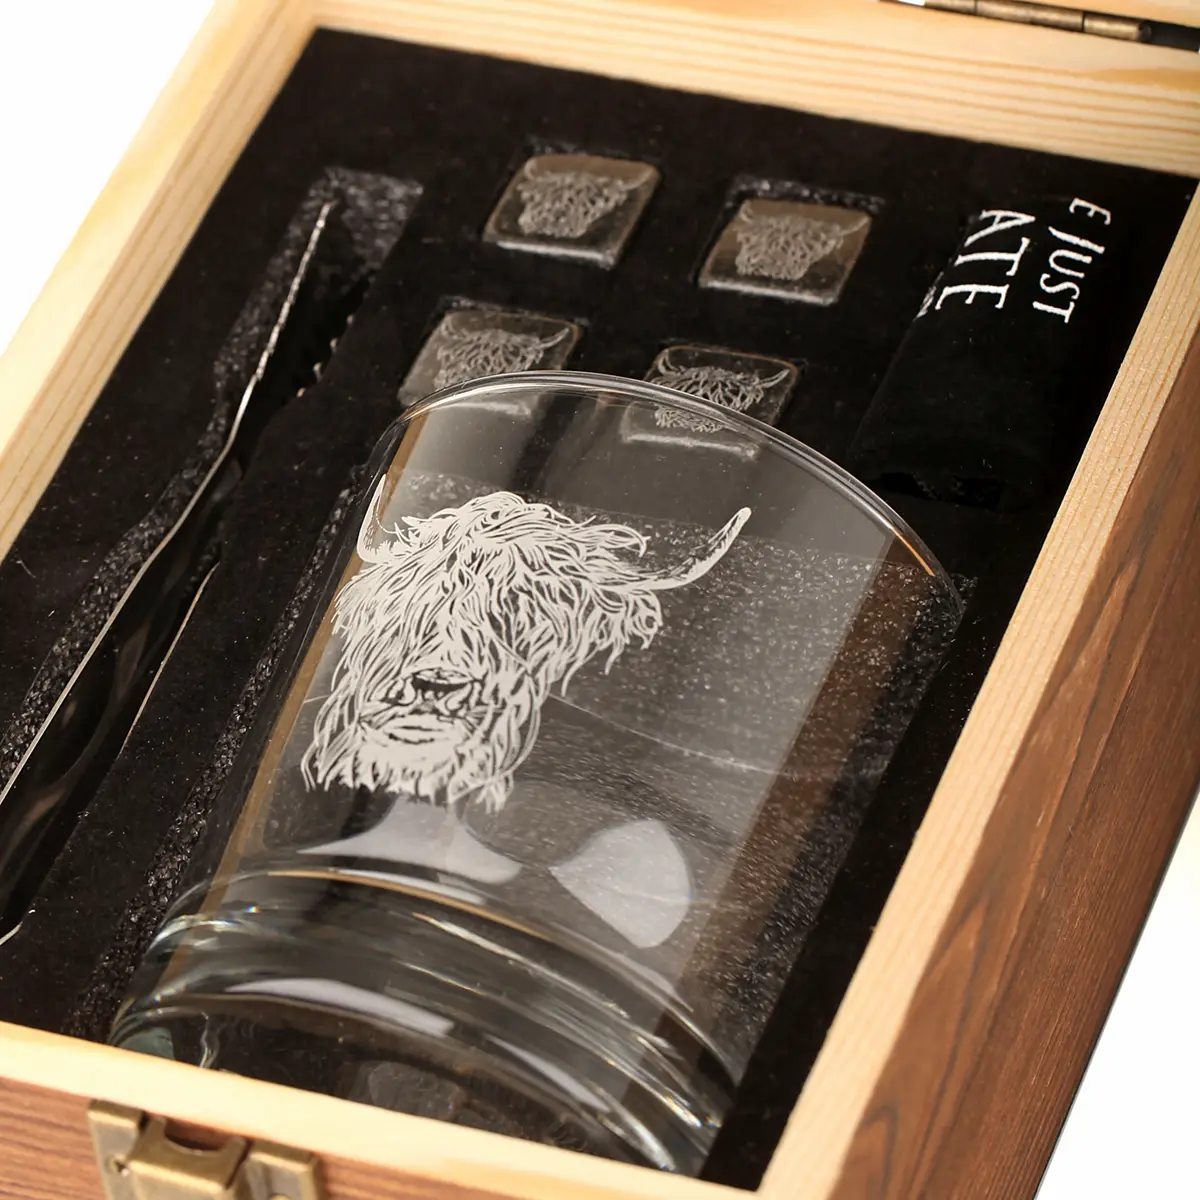 Highland Cow Whisky Set - Whiskyglas mit Whisky-Steinen & Schiefer Untersetzer in Holzbox